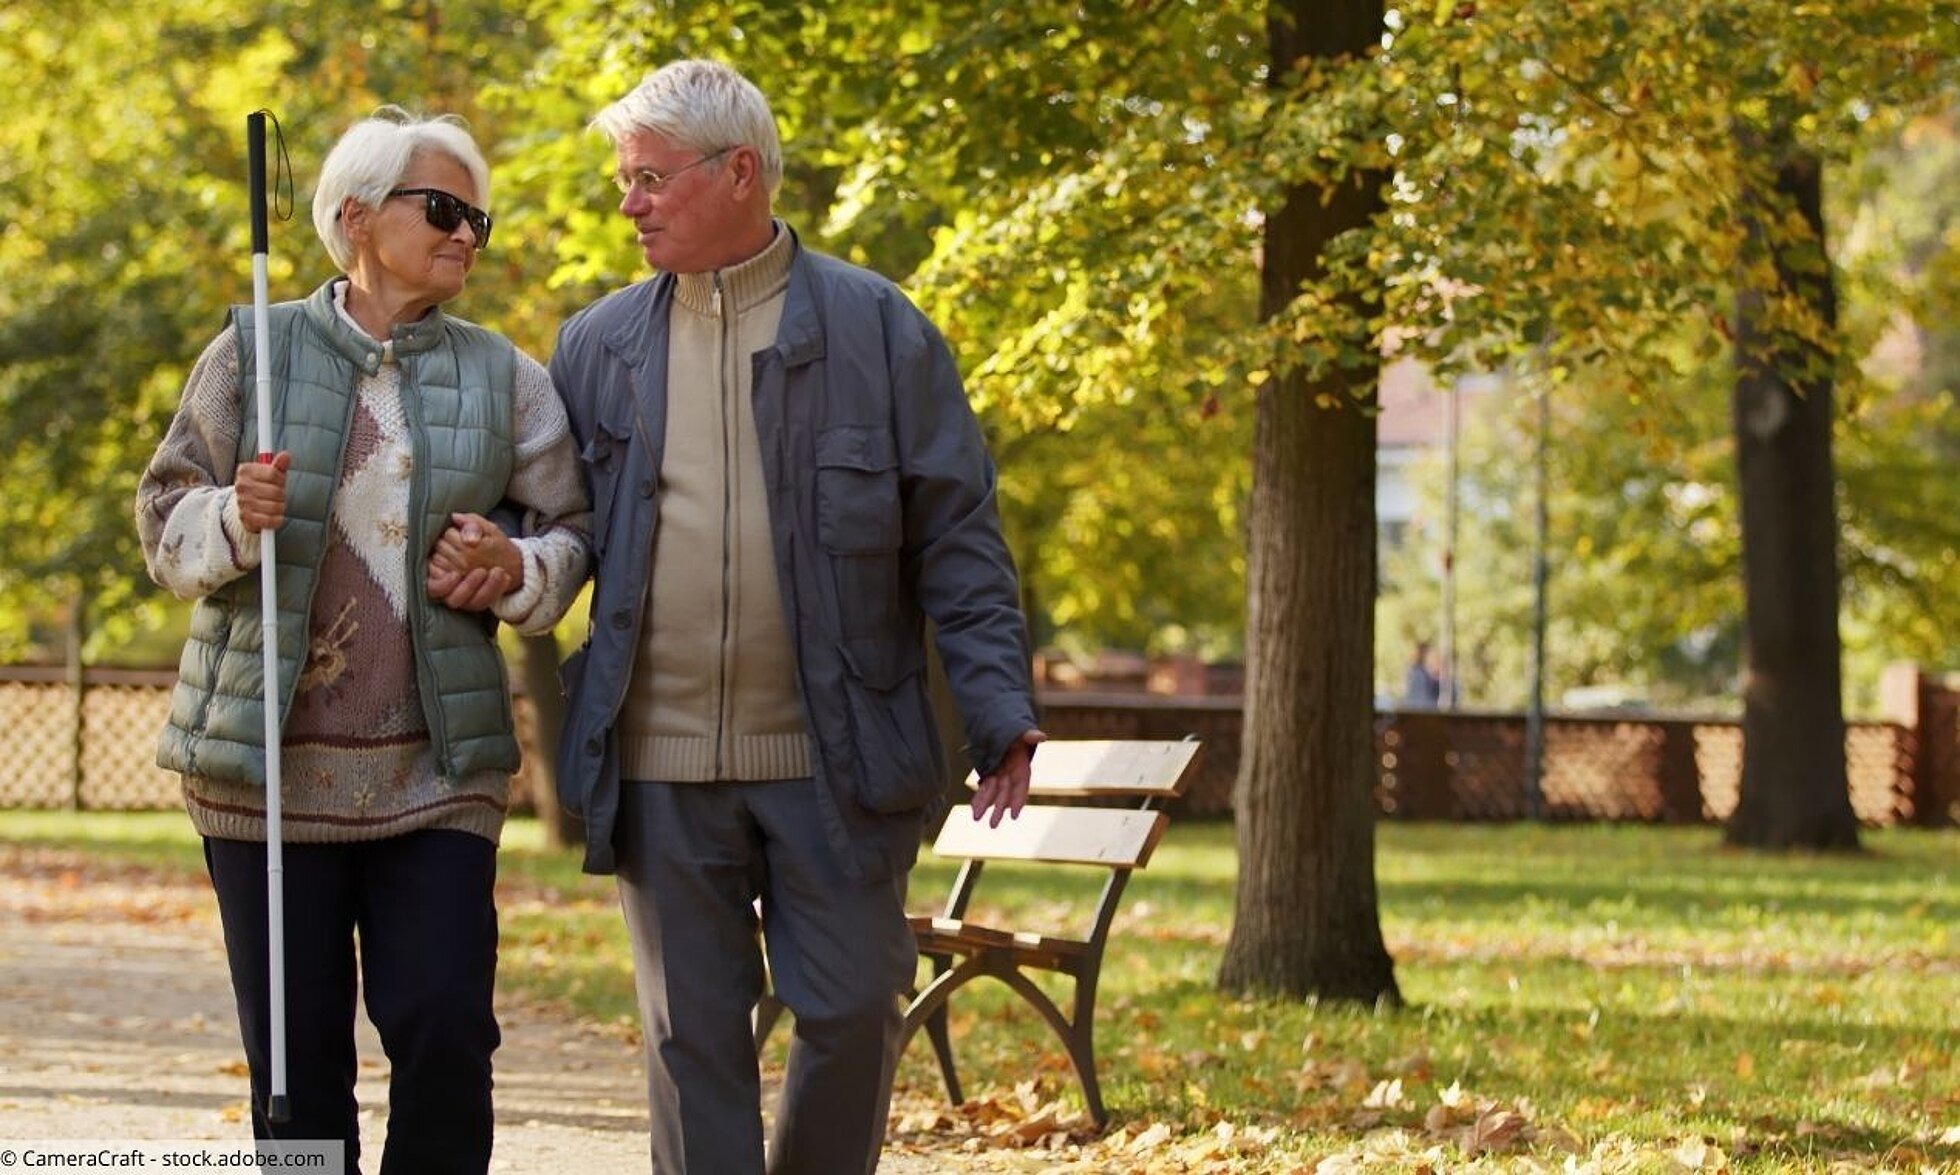 Älteres Paar im Park; Mann führt Frau mit Blindenstock